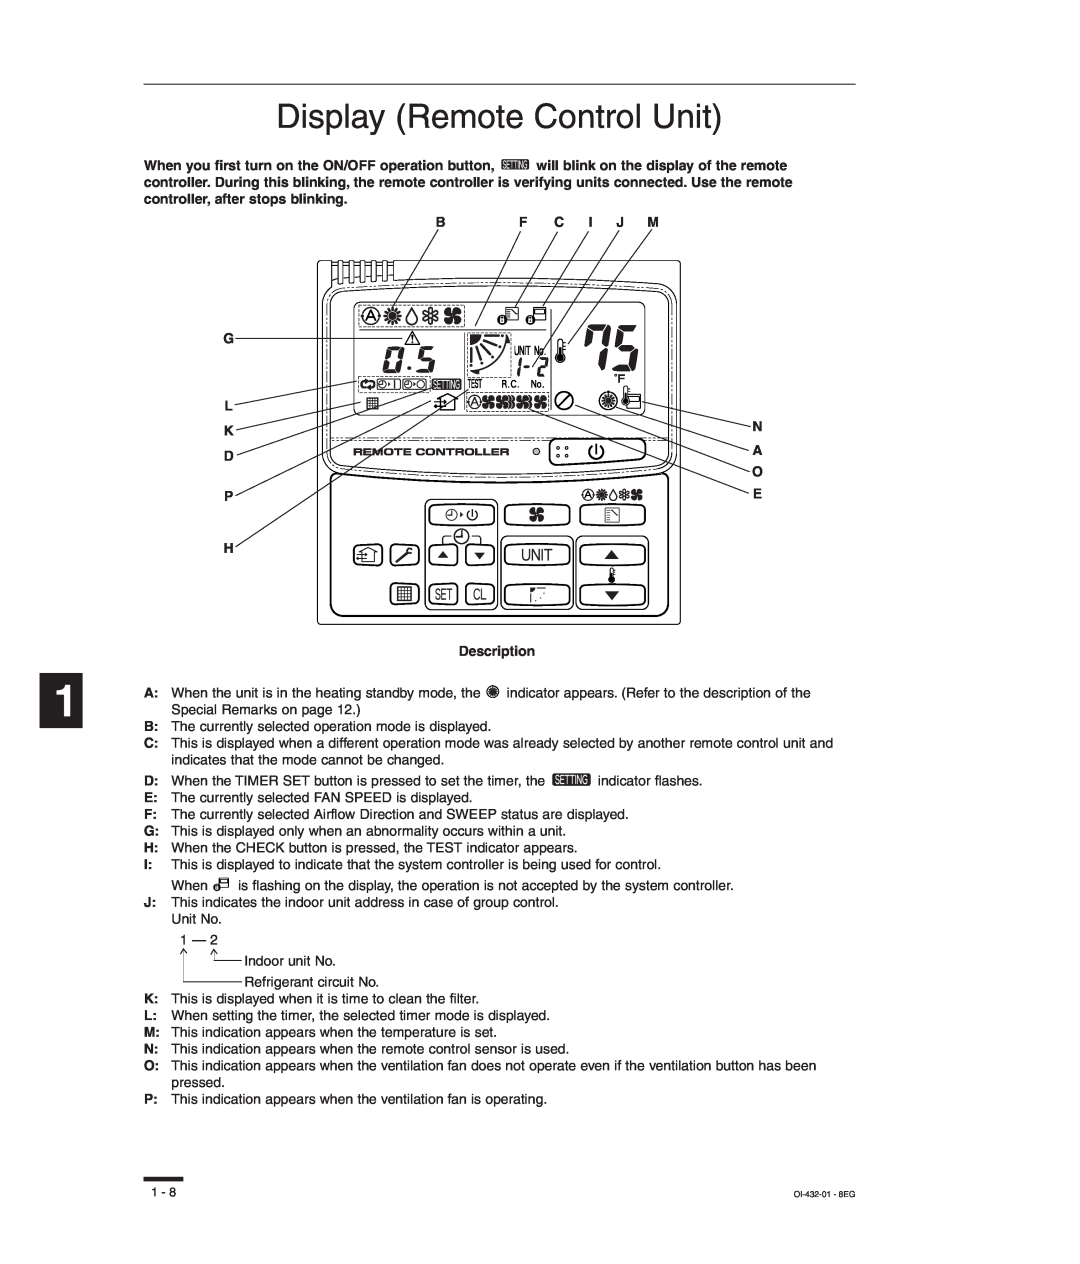 Sanyo RCS-SH80UG, TM-SH80UG, SHA-KC64UG Display Remote Control Unit, G L K D P, Bf C I J M N A O E, H Description 